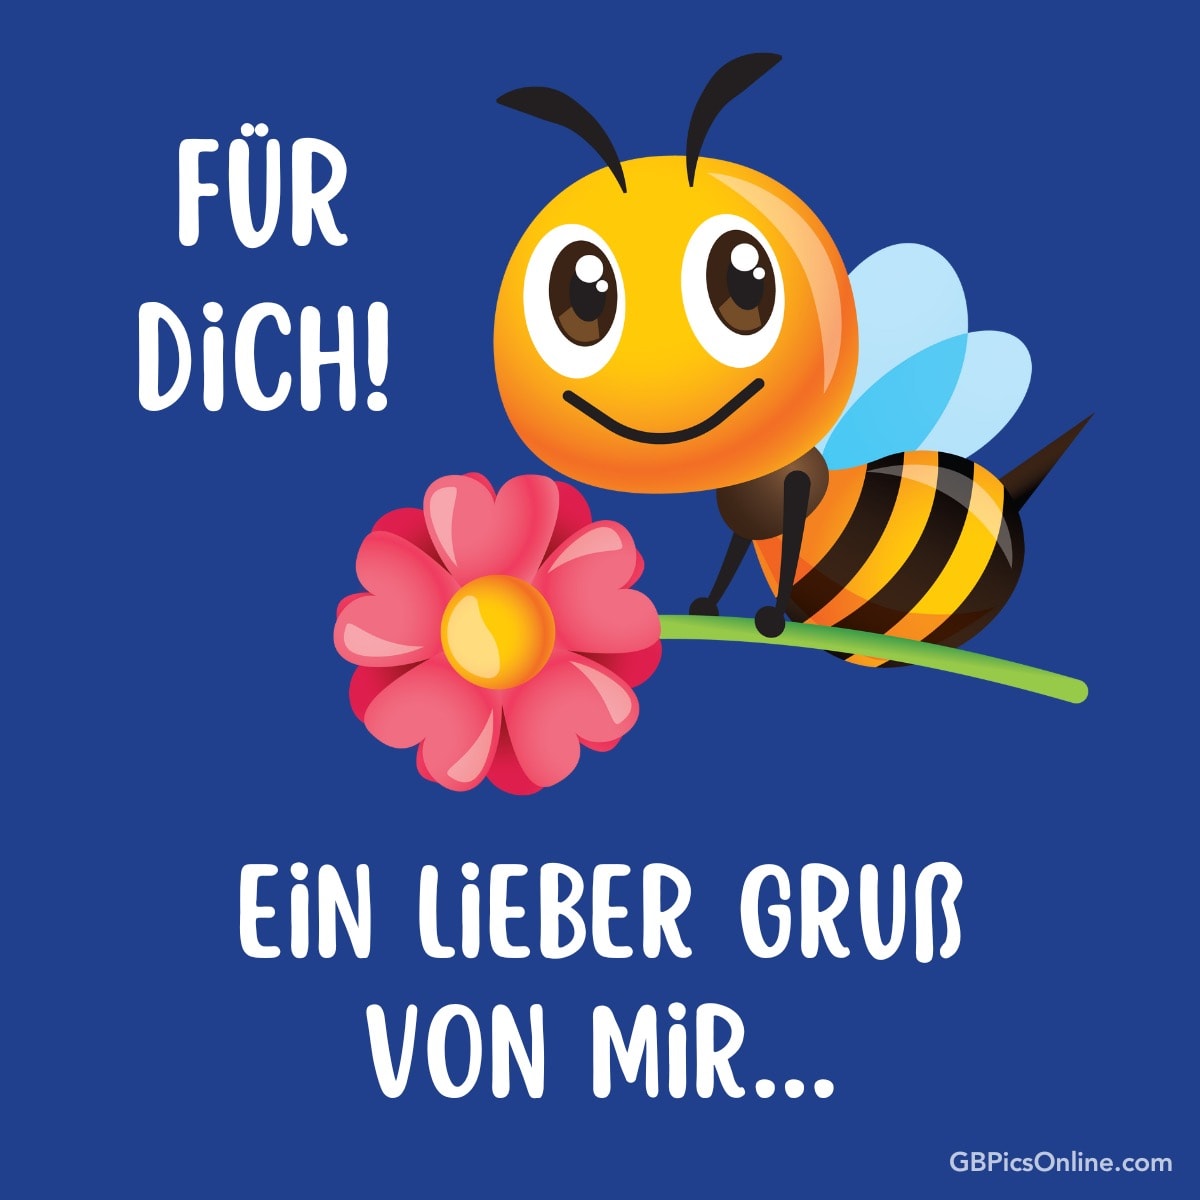 Eine lächelnde Biene mit Blume und den Worten „Für Dich! Ein lieber Gruß von mir...“ auf blauem Hintergrund